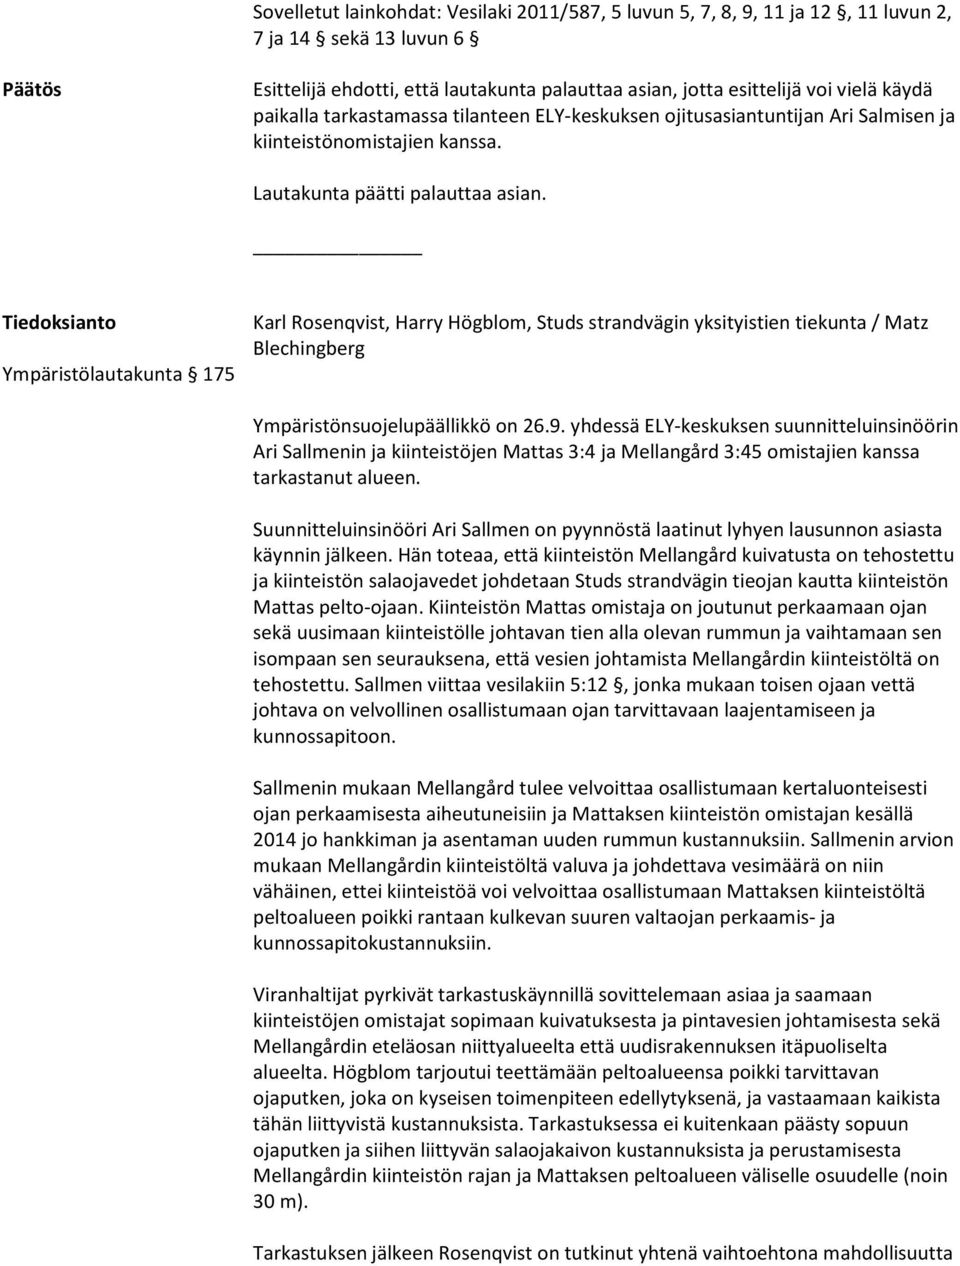 Tiedoksianto Ympäristölautakunta 175 Karl Rosenqvist, Harry Högblom, Studs strandvägin yksityistien tiekunta / Matz Blechingberg Ympäristönsuojelupäällikkö on 26.9.